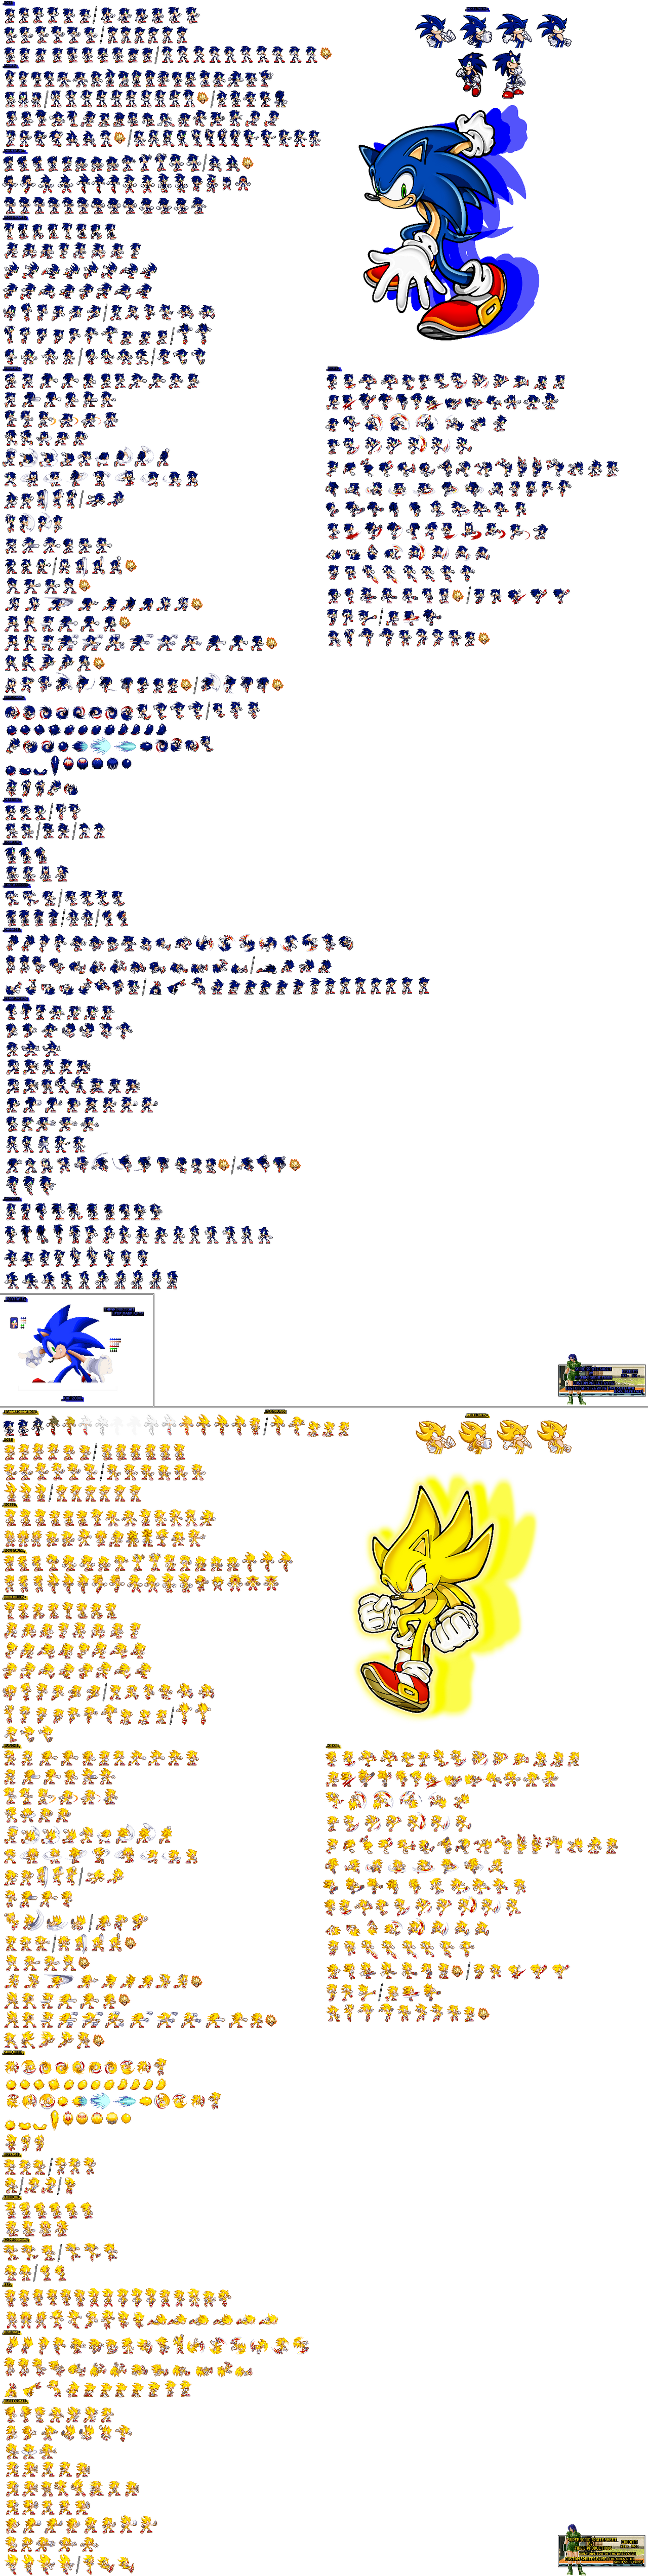 Classic Sonic Advance Style (REUPLOAD, DESC) by LostSM64Fan on DeviantArt